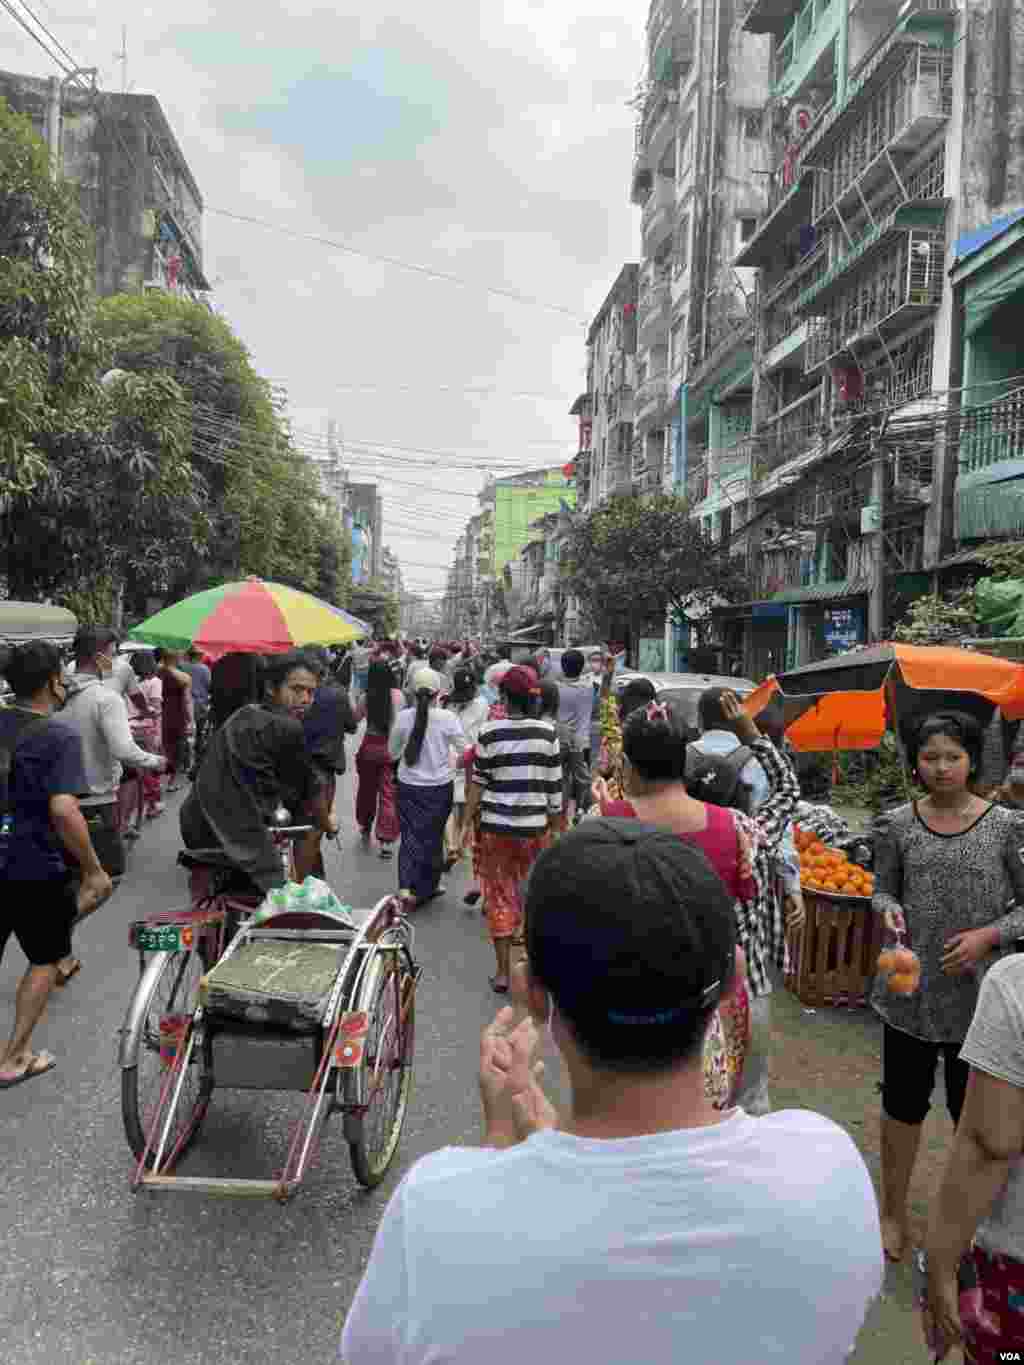 စစ်အာဏာသိမ်း ဆန့်ကျင်သူ ရန်ကုန်မြို့ခံတို့ရဲ့ ဒုတိယမြောက်နေ့ ချီတက်ပွဲ 02-07-2021